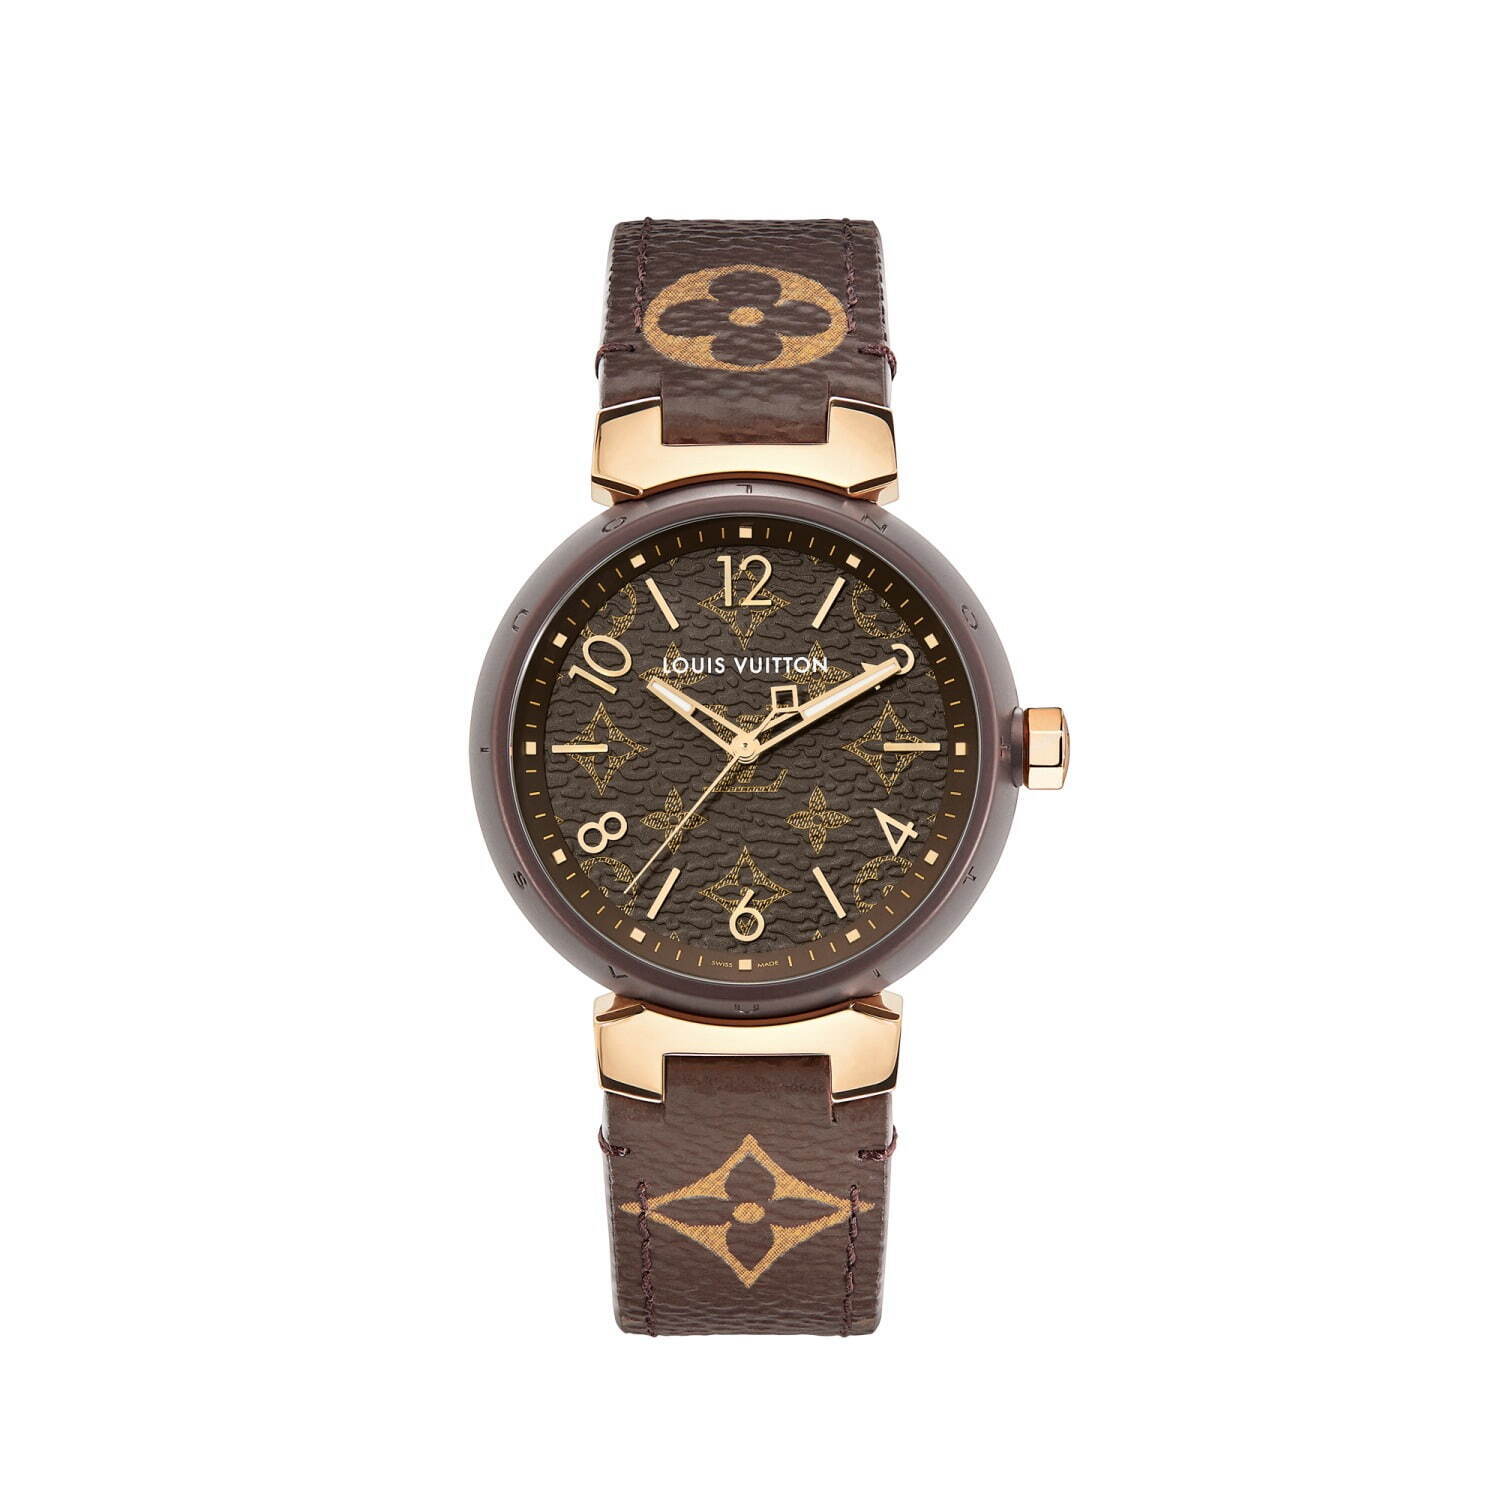 ルイ・ヴィトンの腕時計「タンブール モノグラム」新作、モノグラム